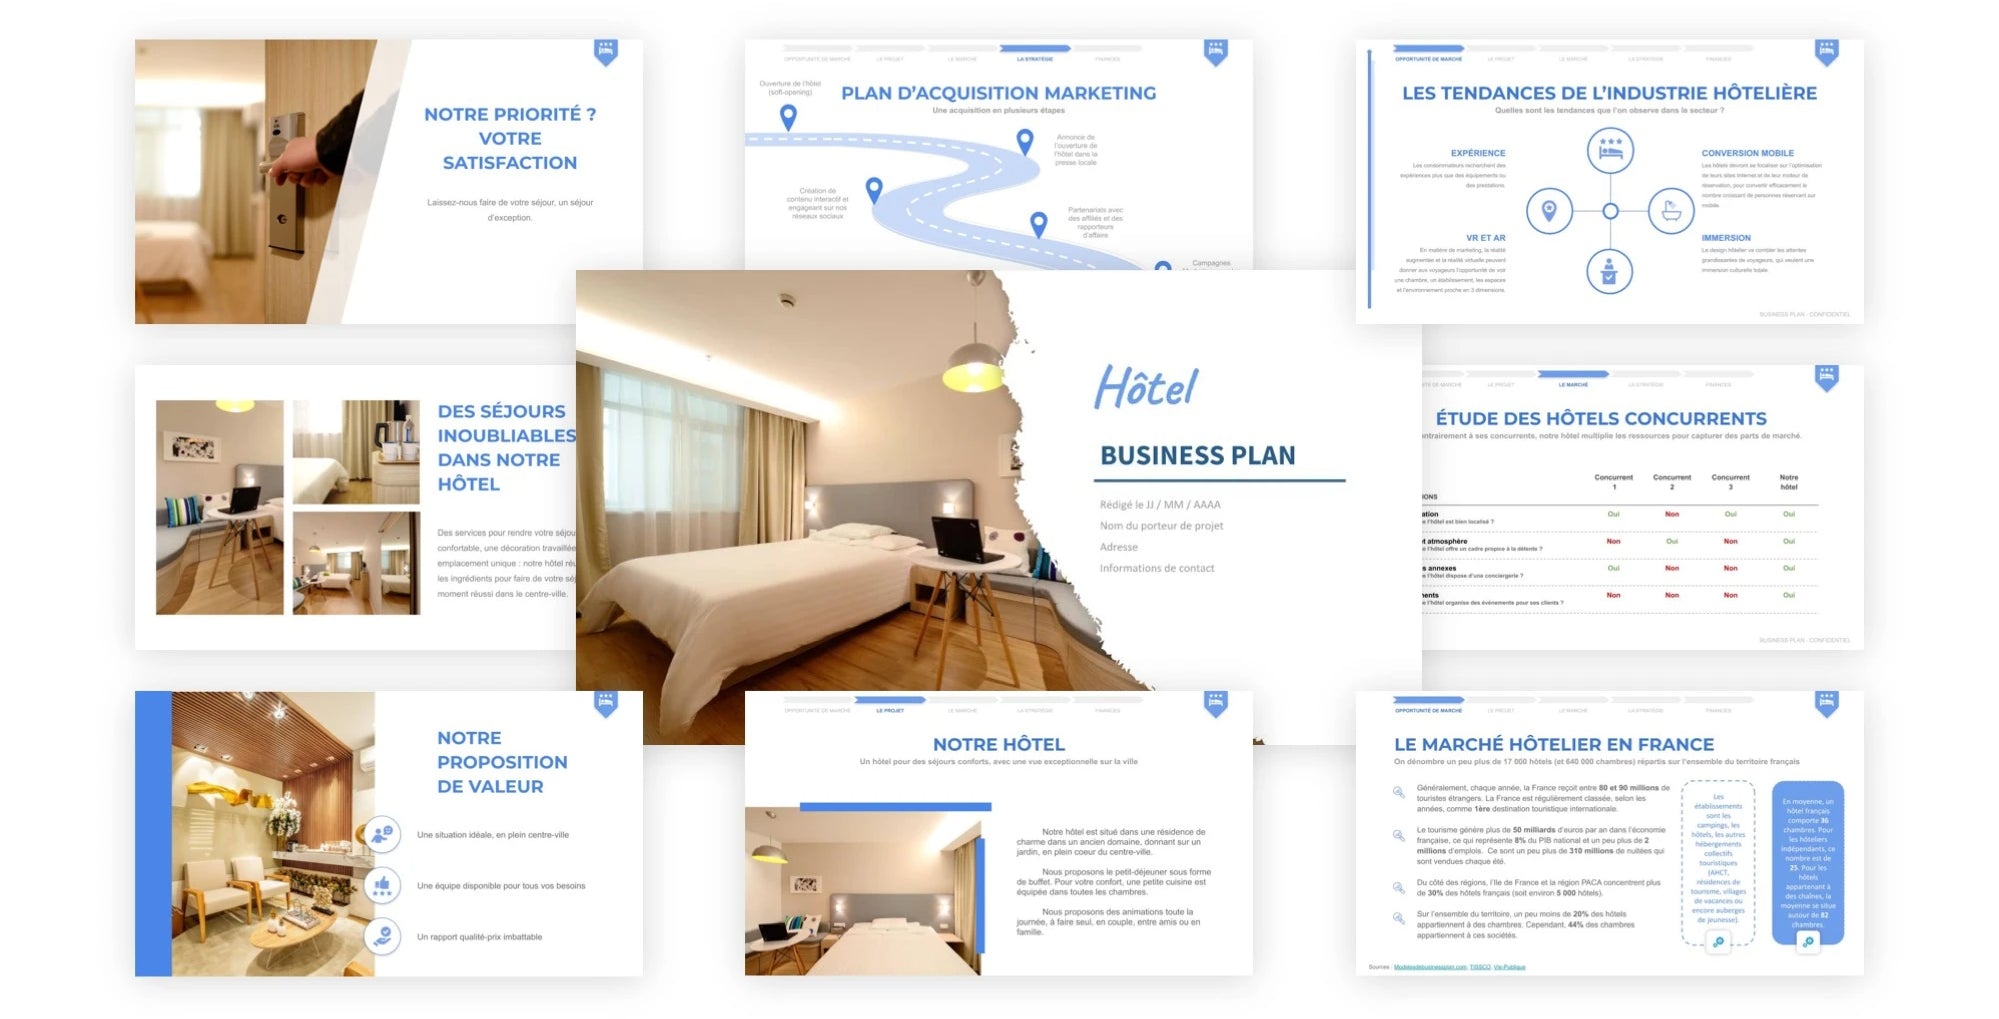 esempio di business plan per hotel